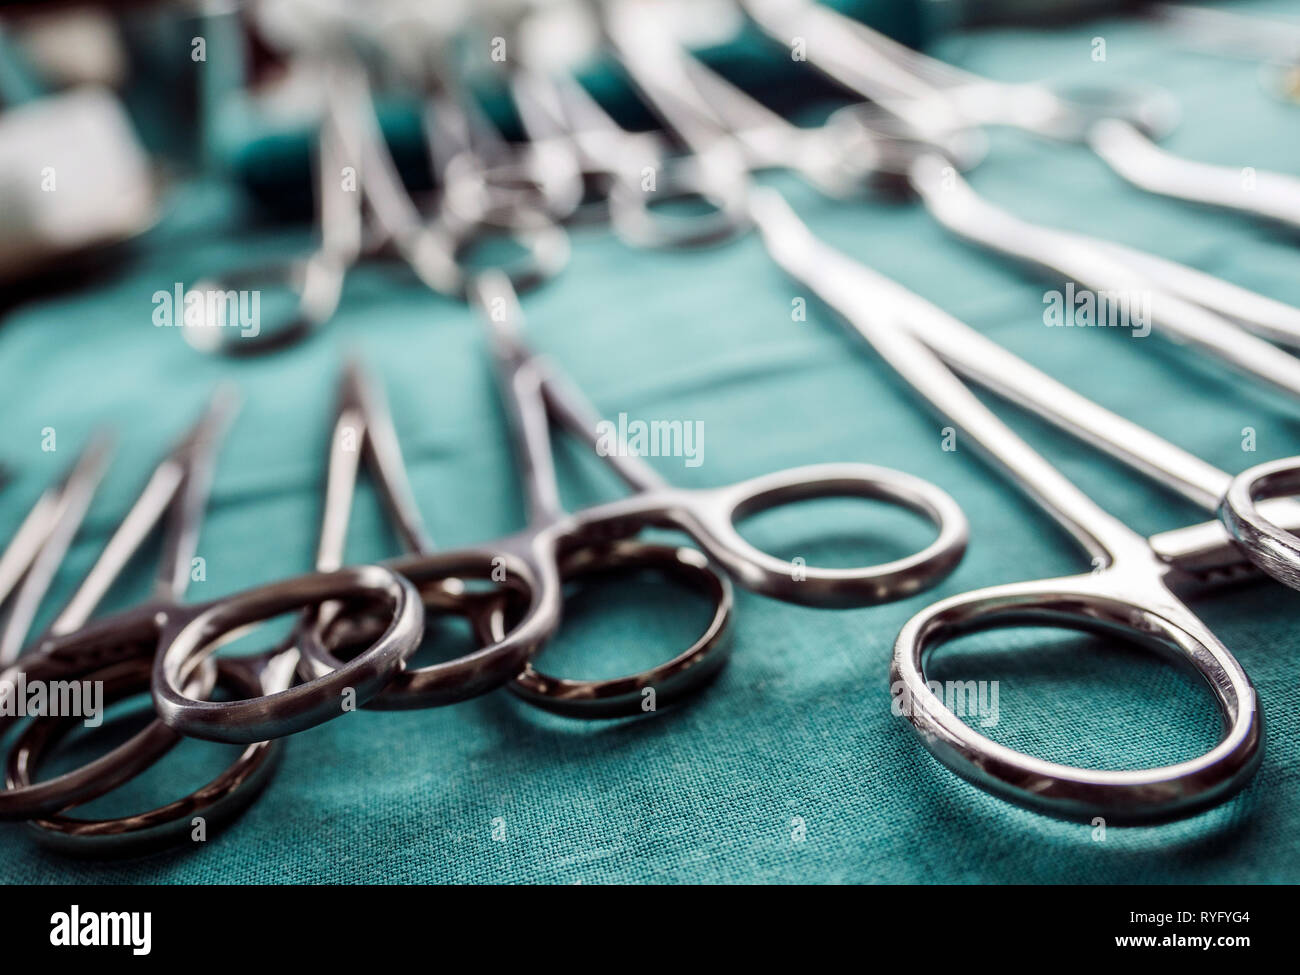 Einige scheren für Chirurgie in einem Operationssaal, konzeptionelle Bild, horizontale Zusammensetzung Stockfoto